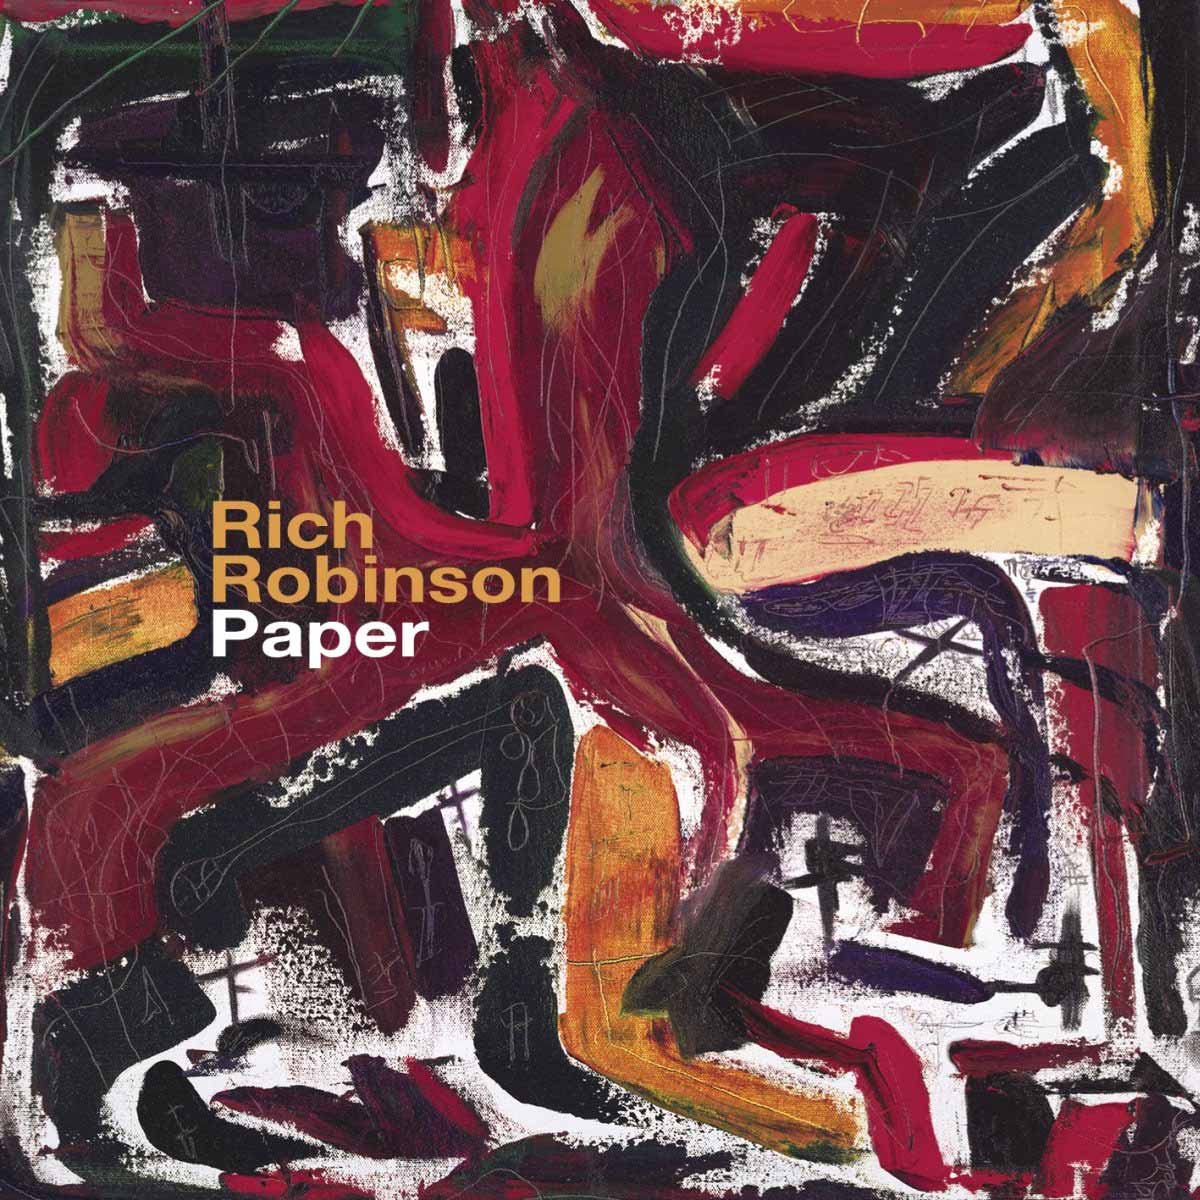 Rich Robinson "Paper"